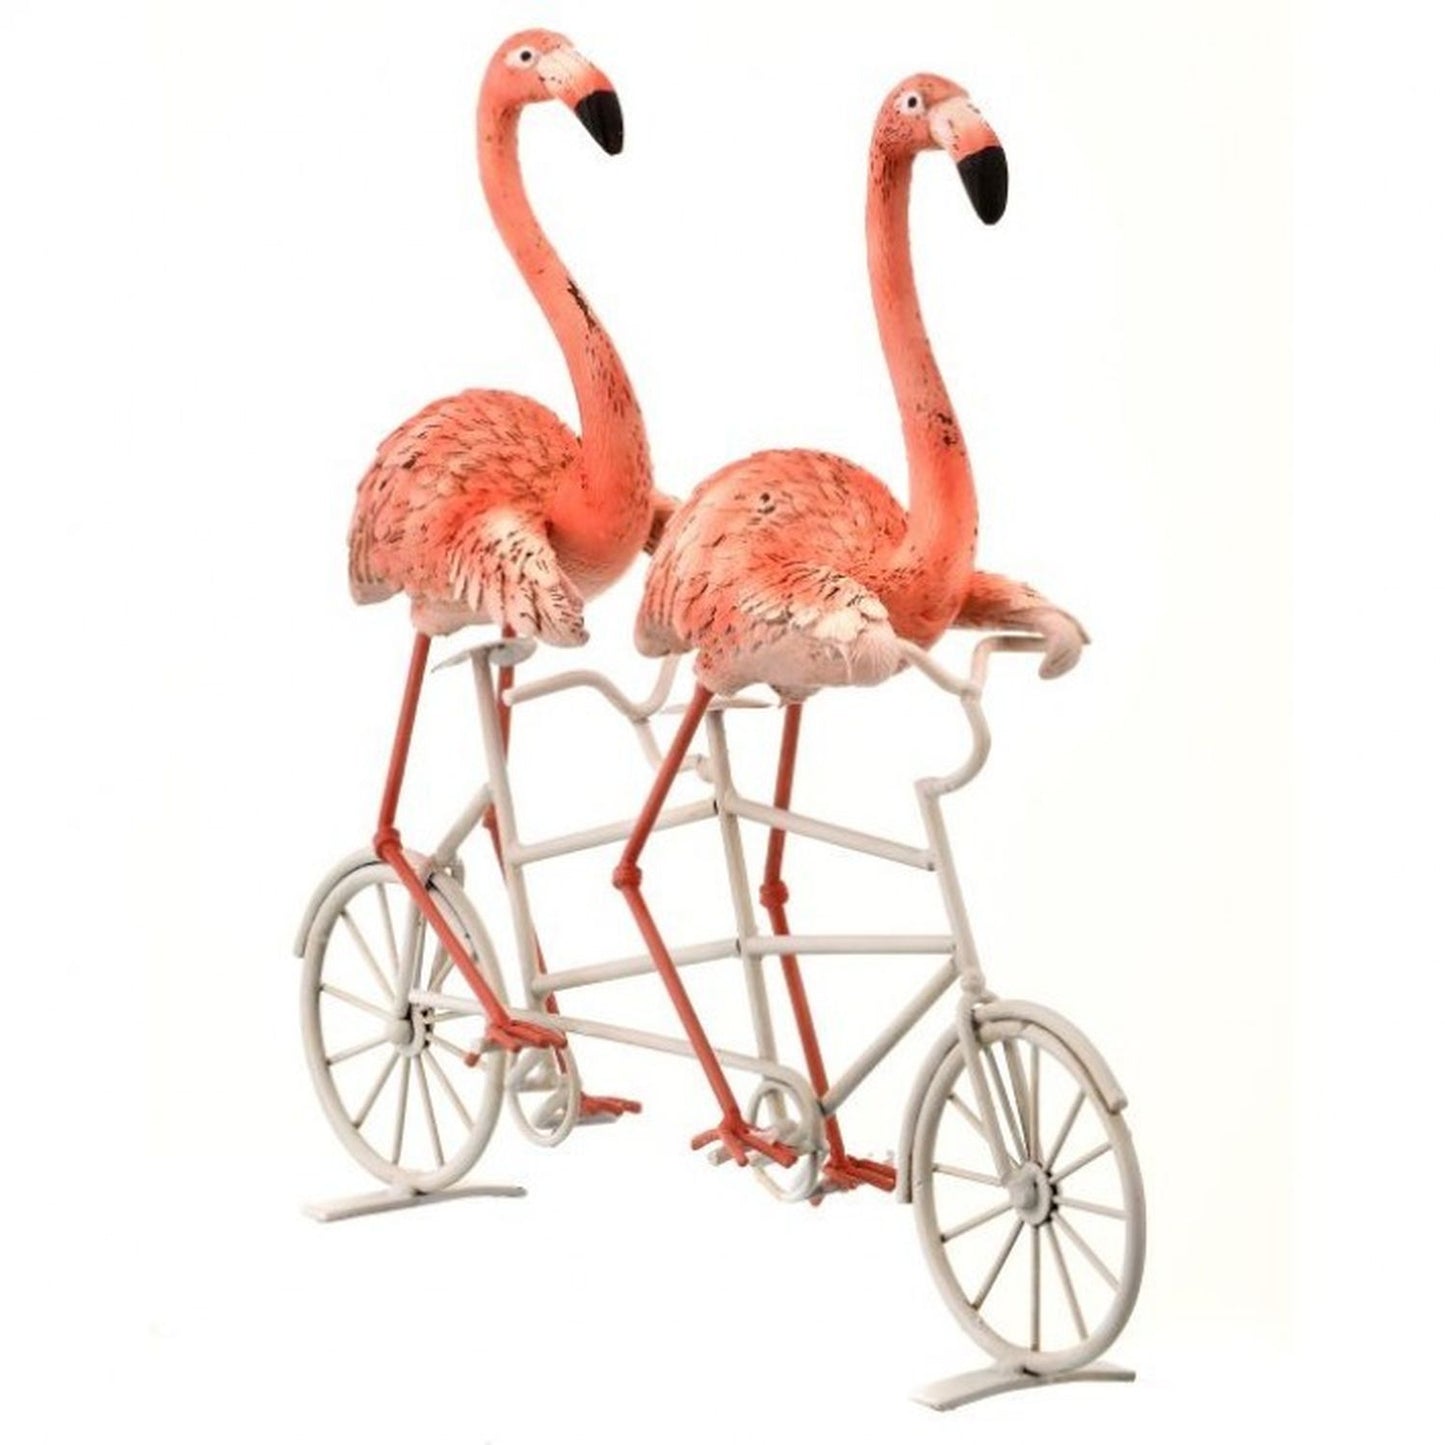 Regency International Resin & Metal Flamingos on Bike 11"L